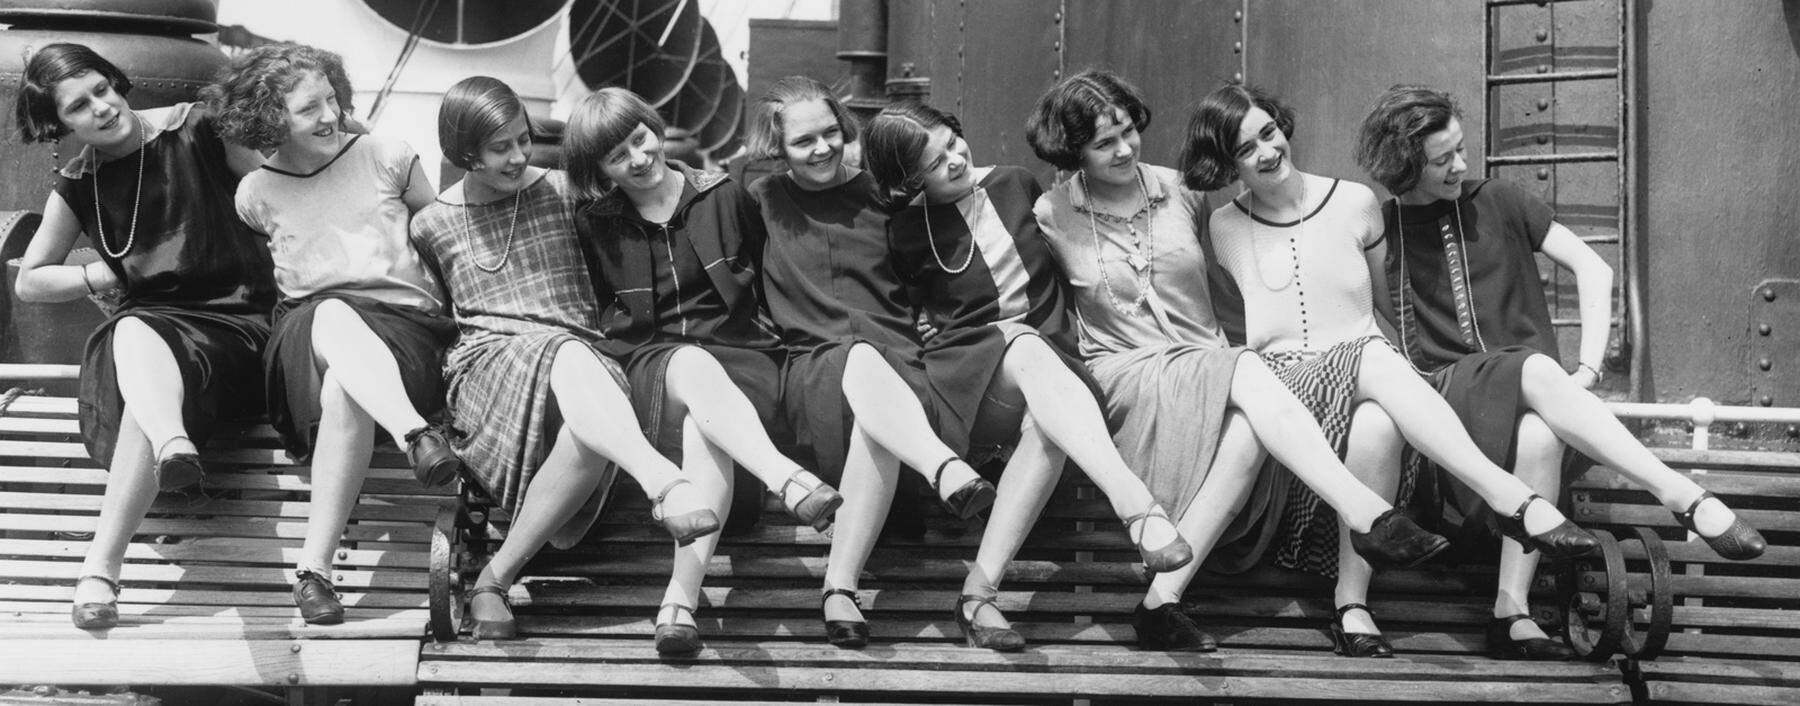 Knie und Kurzhaarschnitt. Die 20er brachten einen neuen Frauentypus hervor. Revuegirls auf Tournee auf einem Ozeandampfer.